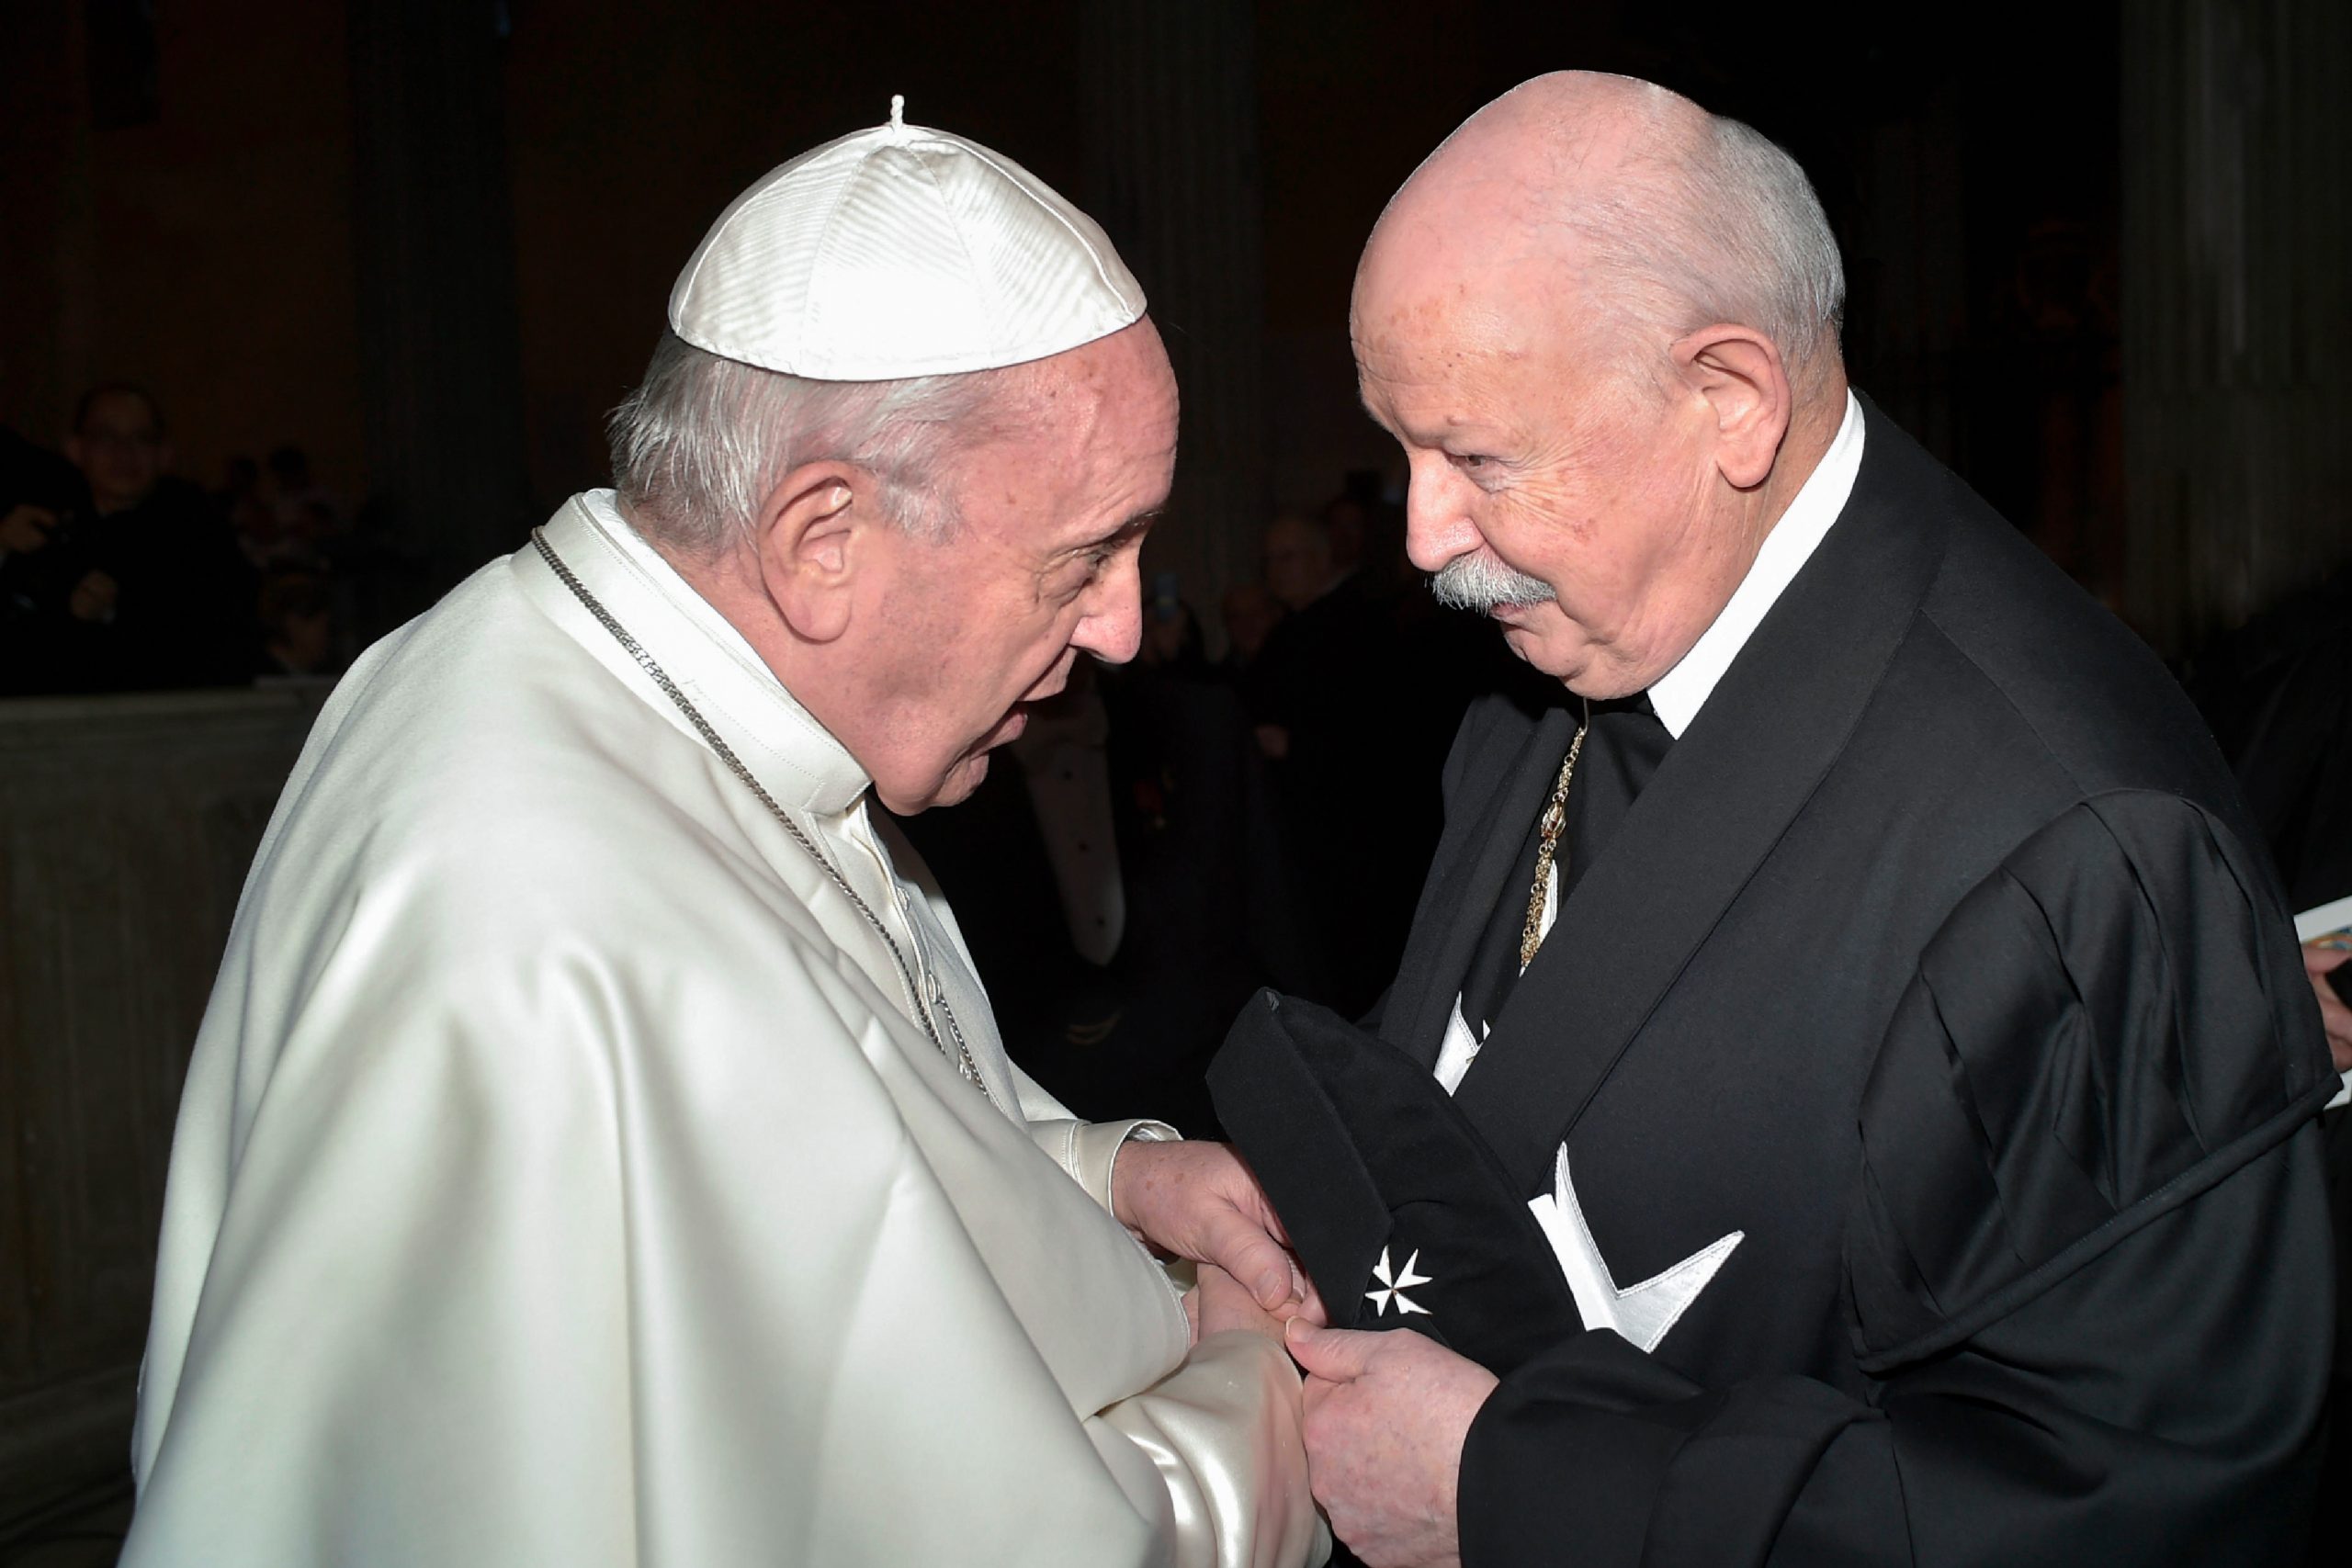 Le Grand Maître rencontre le pape François le Mercredi des Cendres